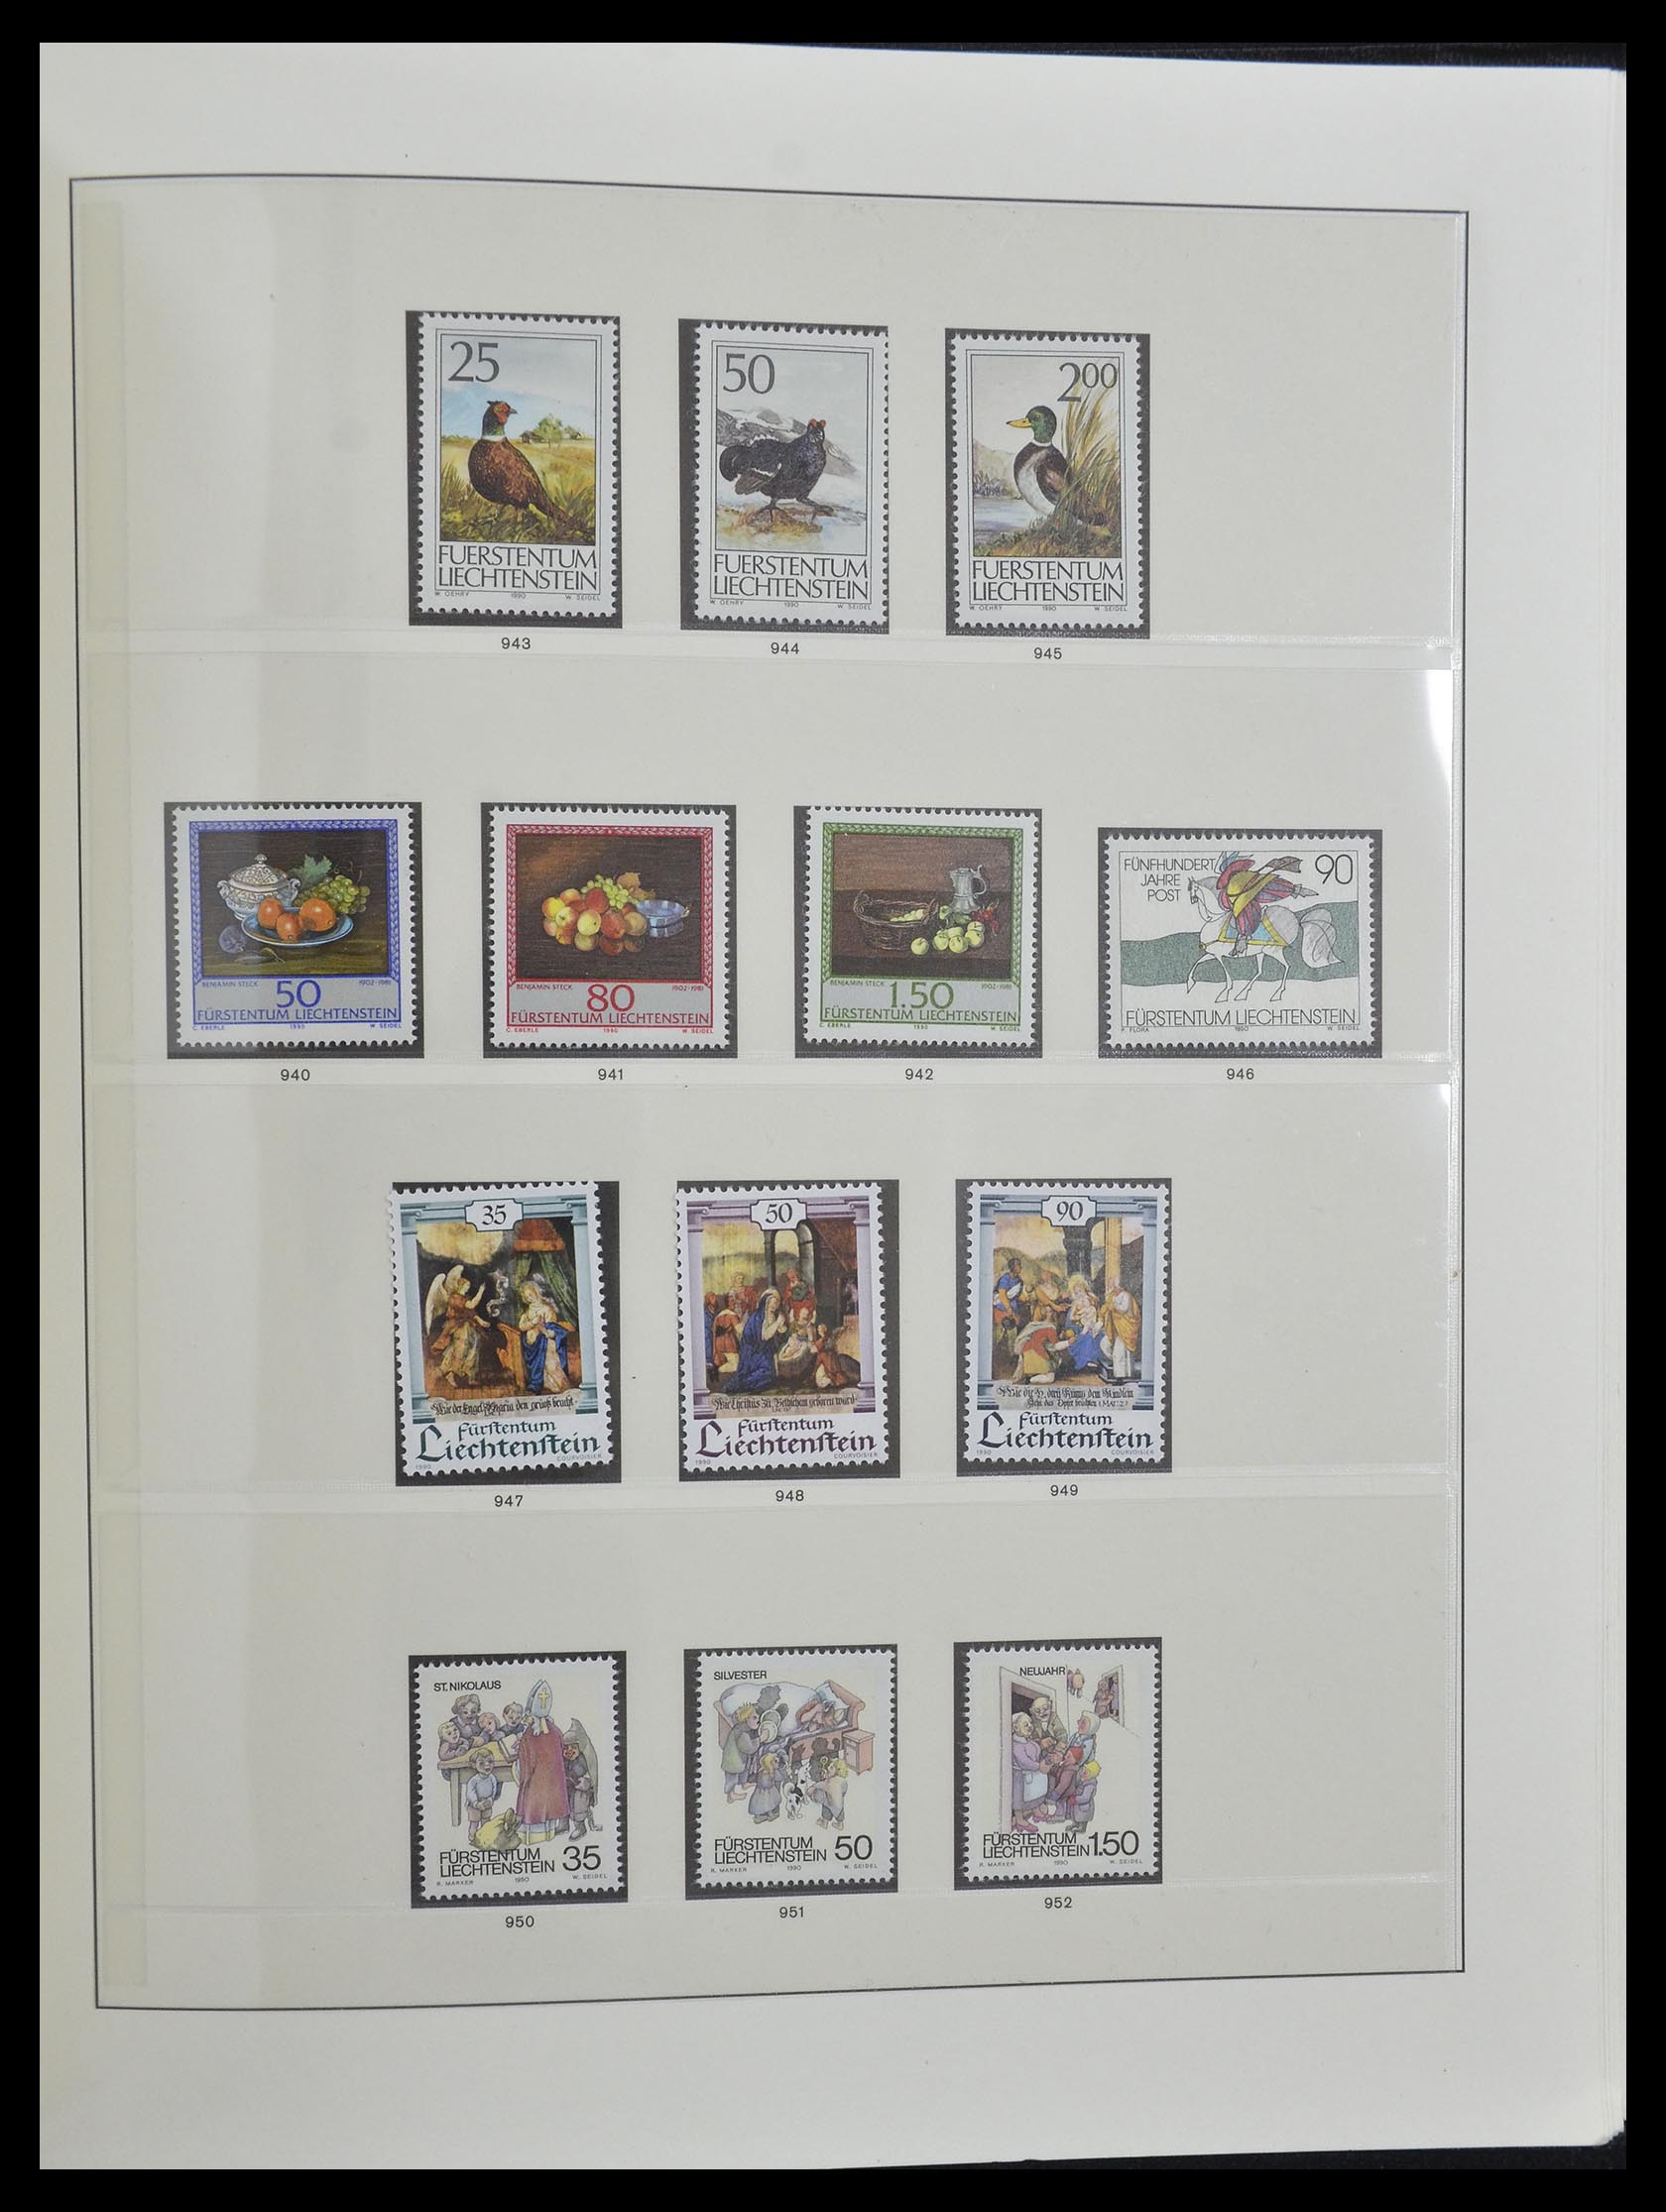 33140 048 - Stamp collection 33140 Liechtenstein 1912-1990.